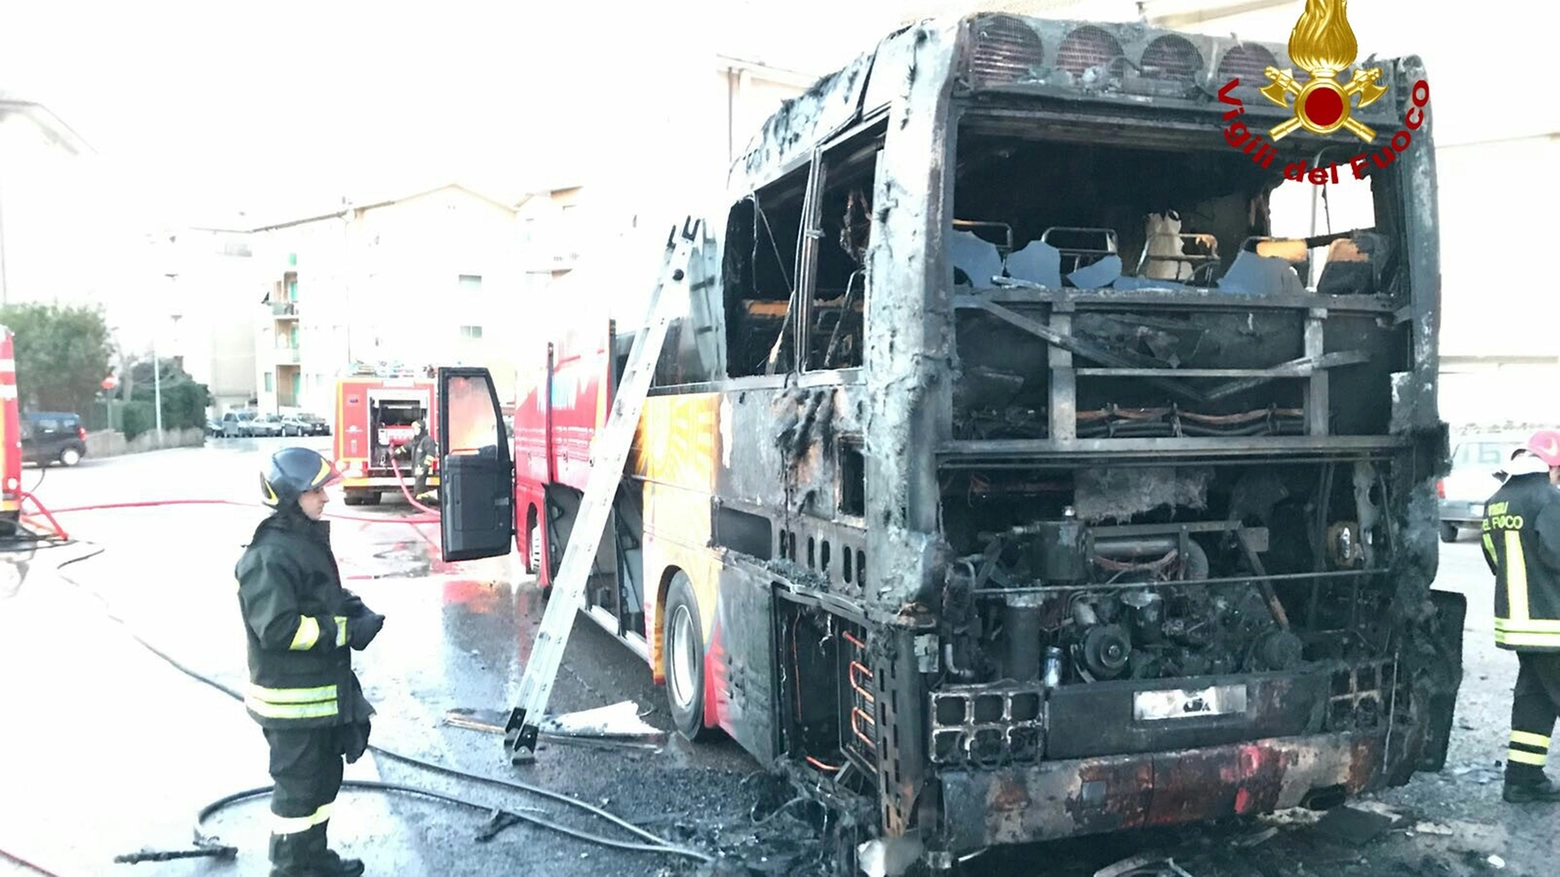 L'autobus semidistrutto dal fuoco